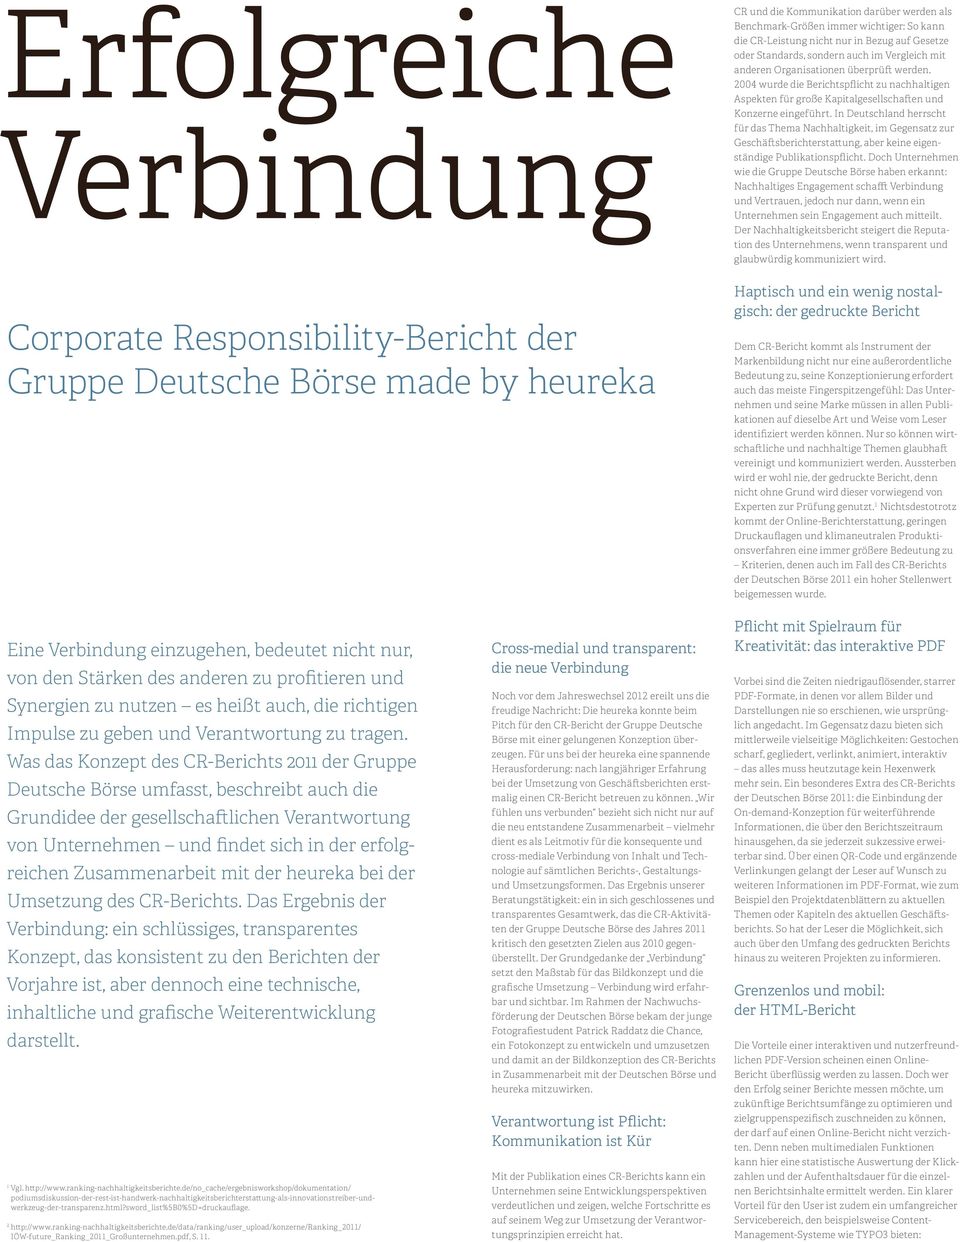 2004 wurde die Berichtspflicht zu nachhaltigen Aspekten für große Kapitalgesellschaften und Konzerne eingeführt.